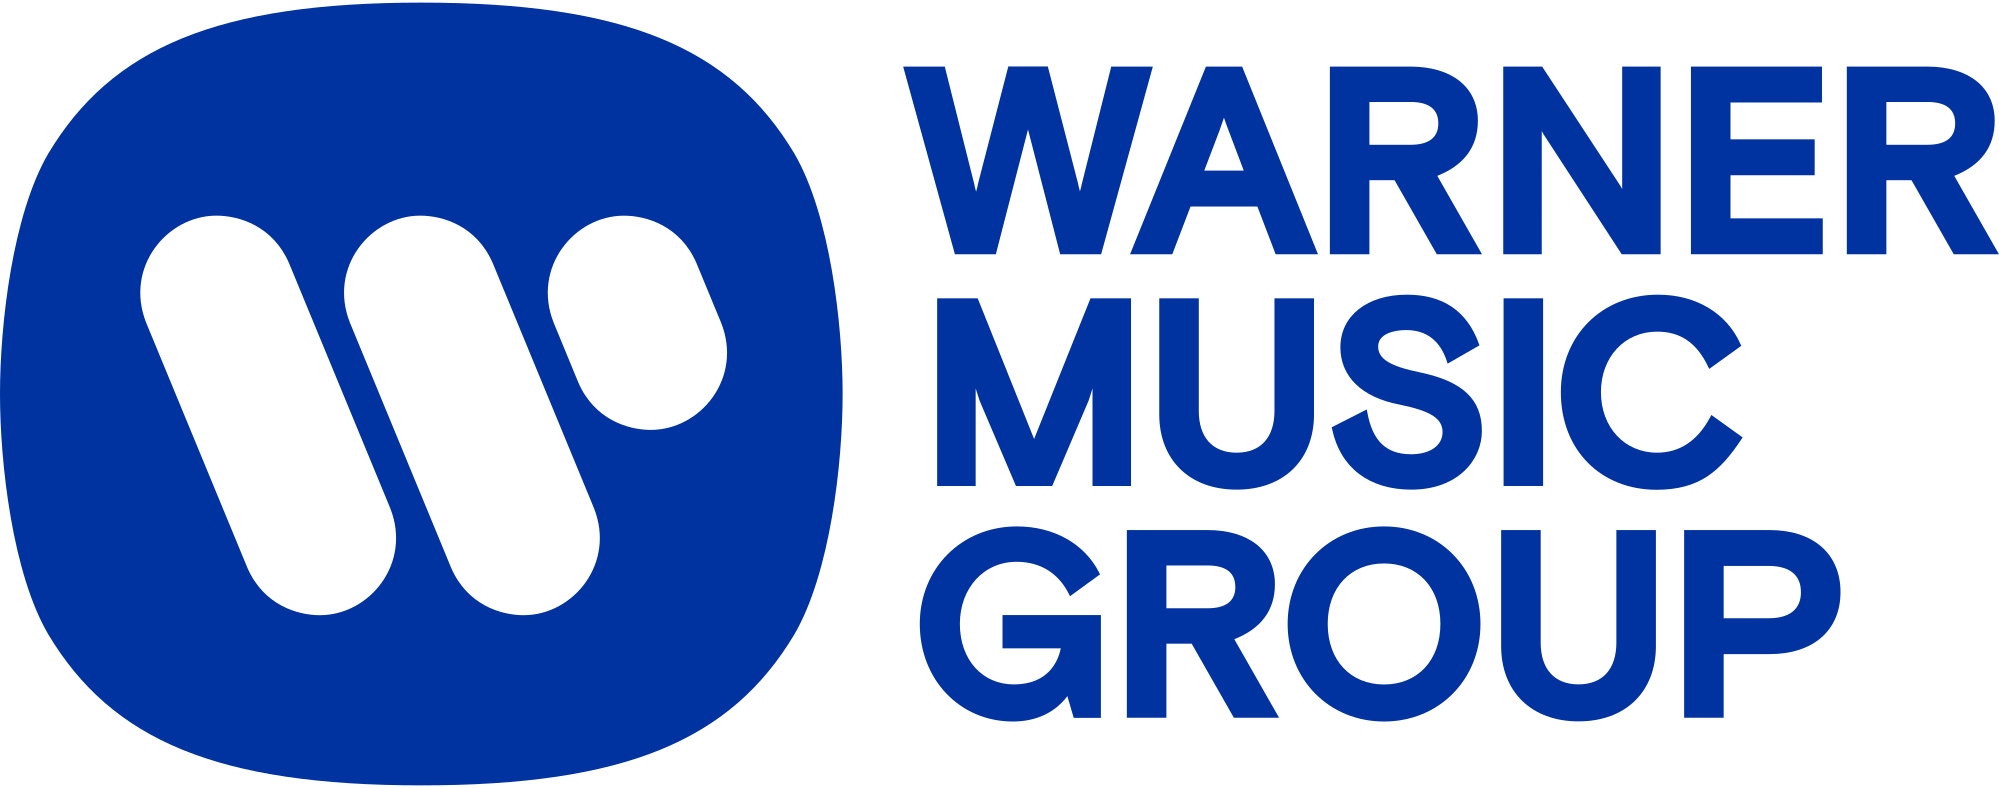 Warner Music Group - company